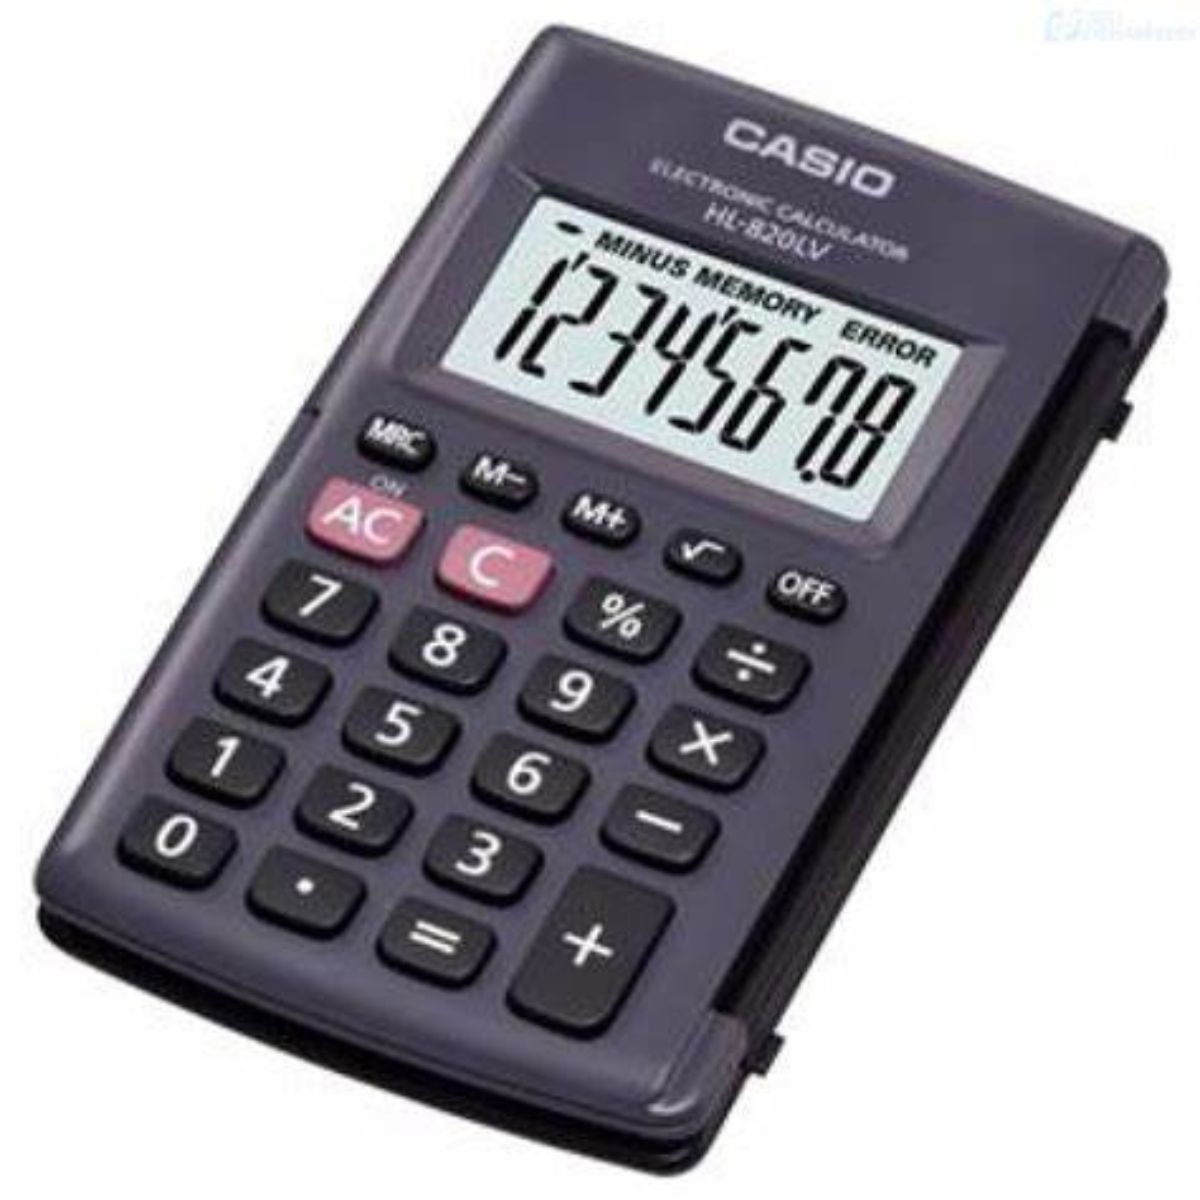 Calculadora Casio Portatil Negra 8 Dígitos 10x12 Cm Con Tapa